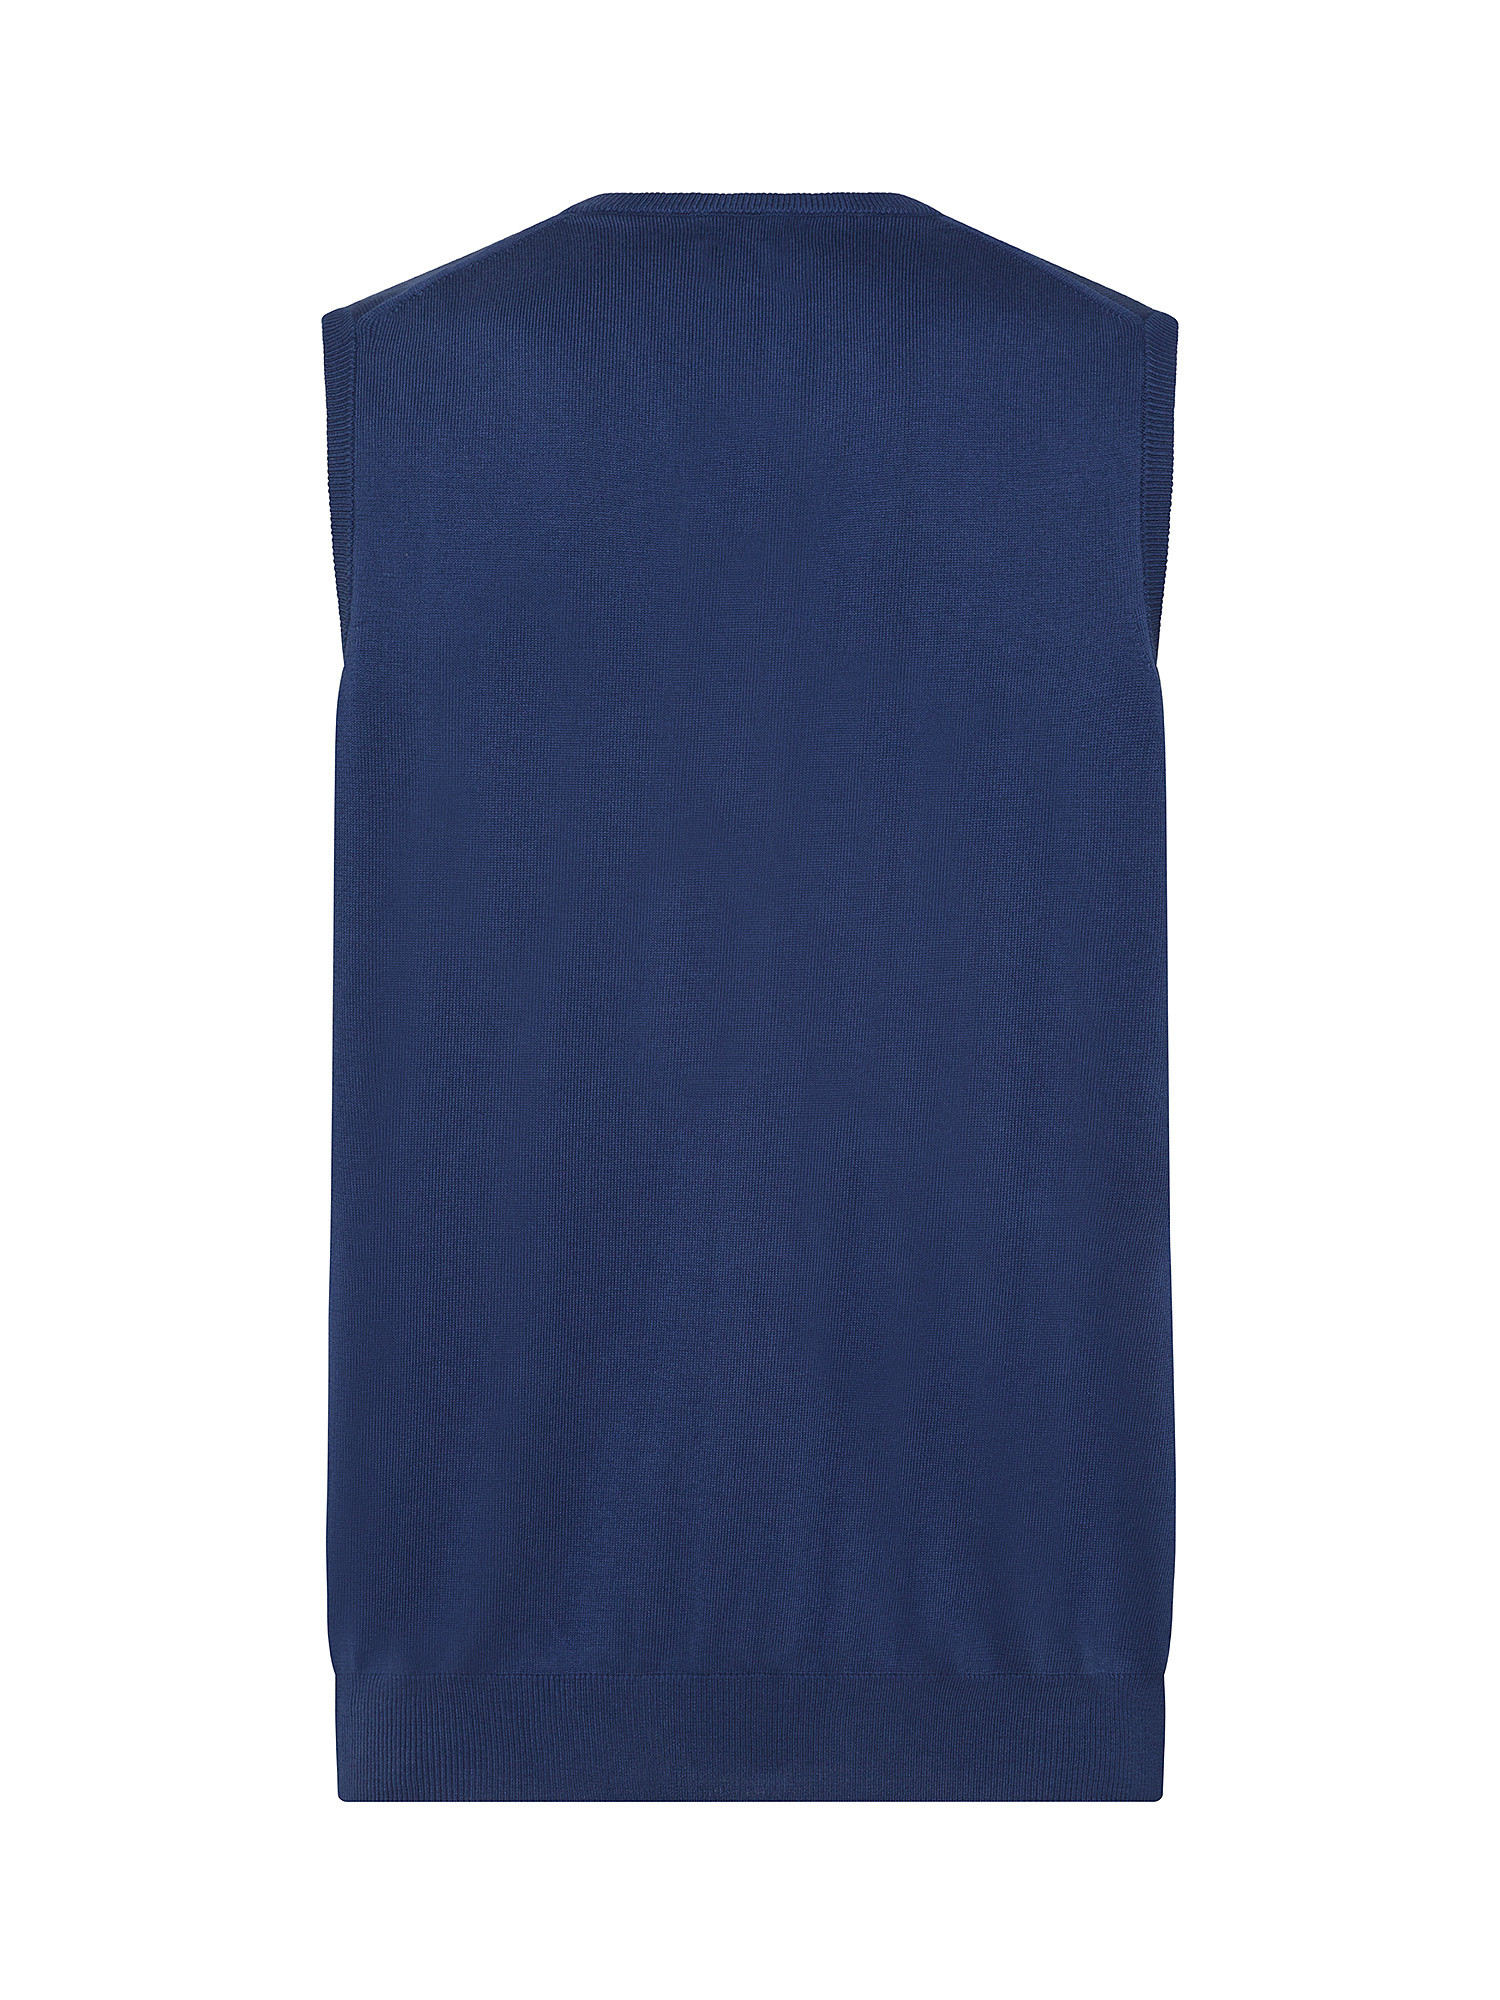 Luca D'Altieri - Extrafine cotton waistcoat, Light Blue, large image number 1